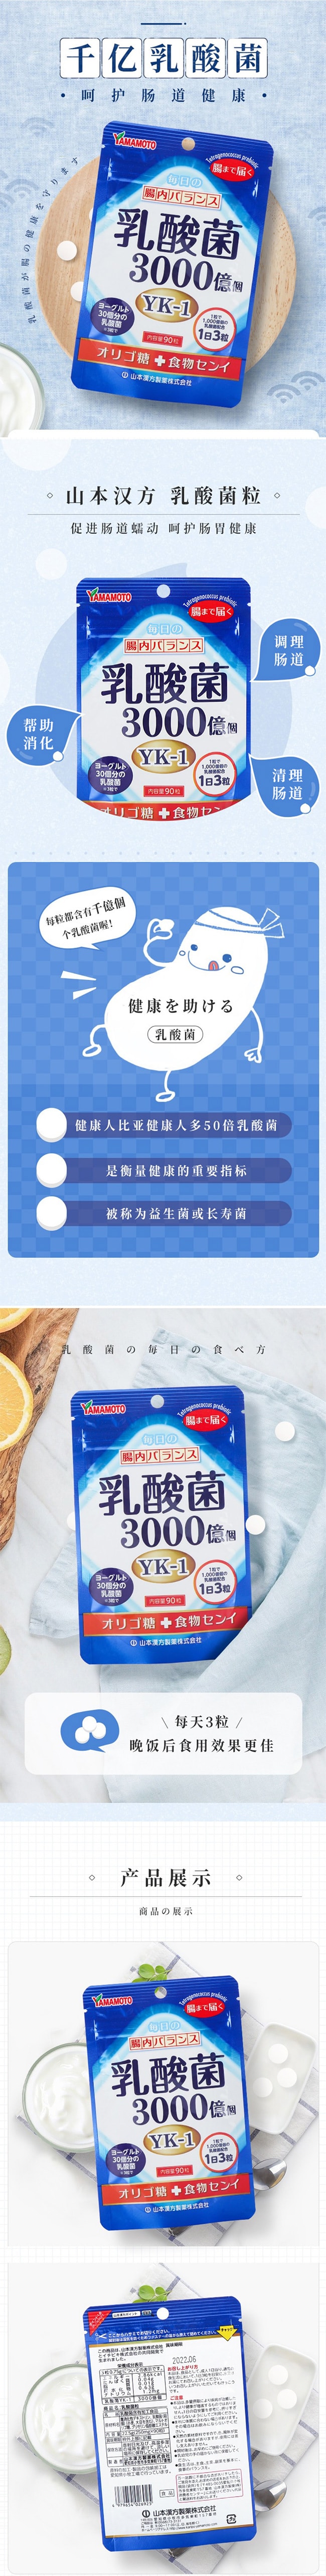 【日本直效郵件】YAMAMOTO山本漢方製藥 改善腸道環境乳酸菌丸 90粒